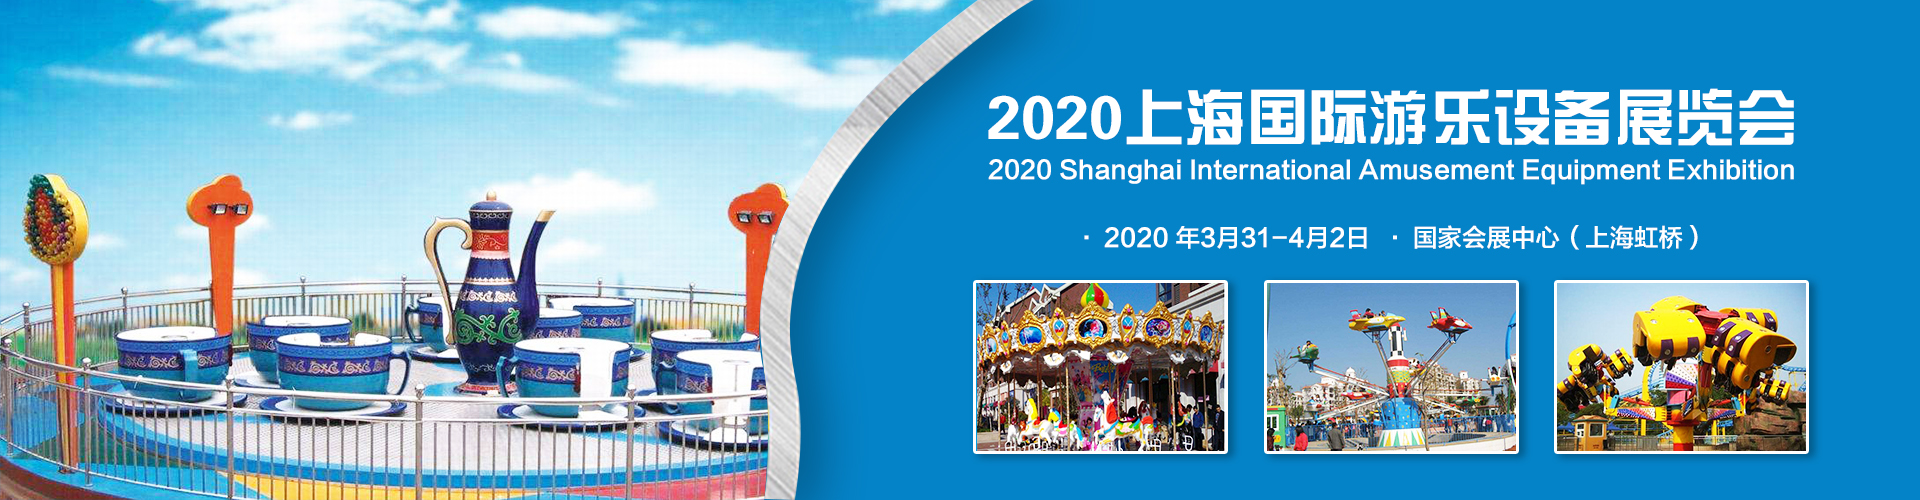 2020年上海國際游樂設備展覽會